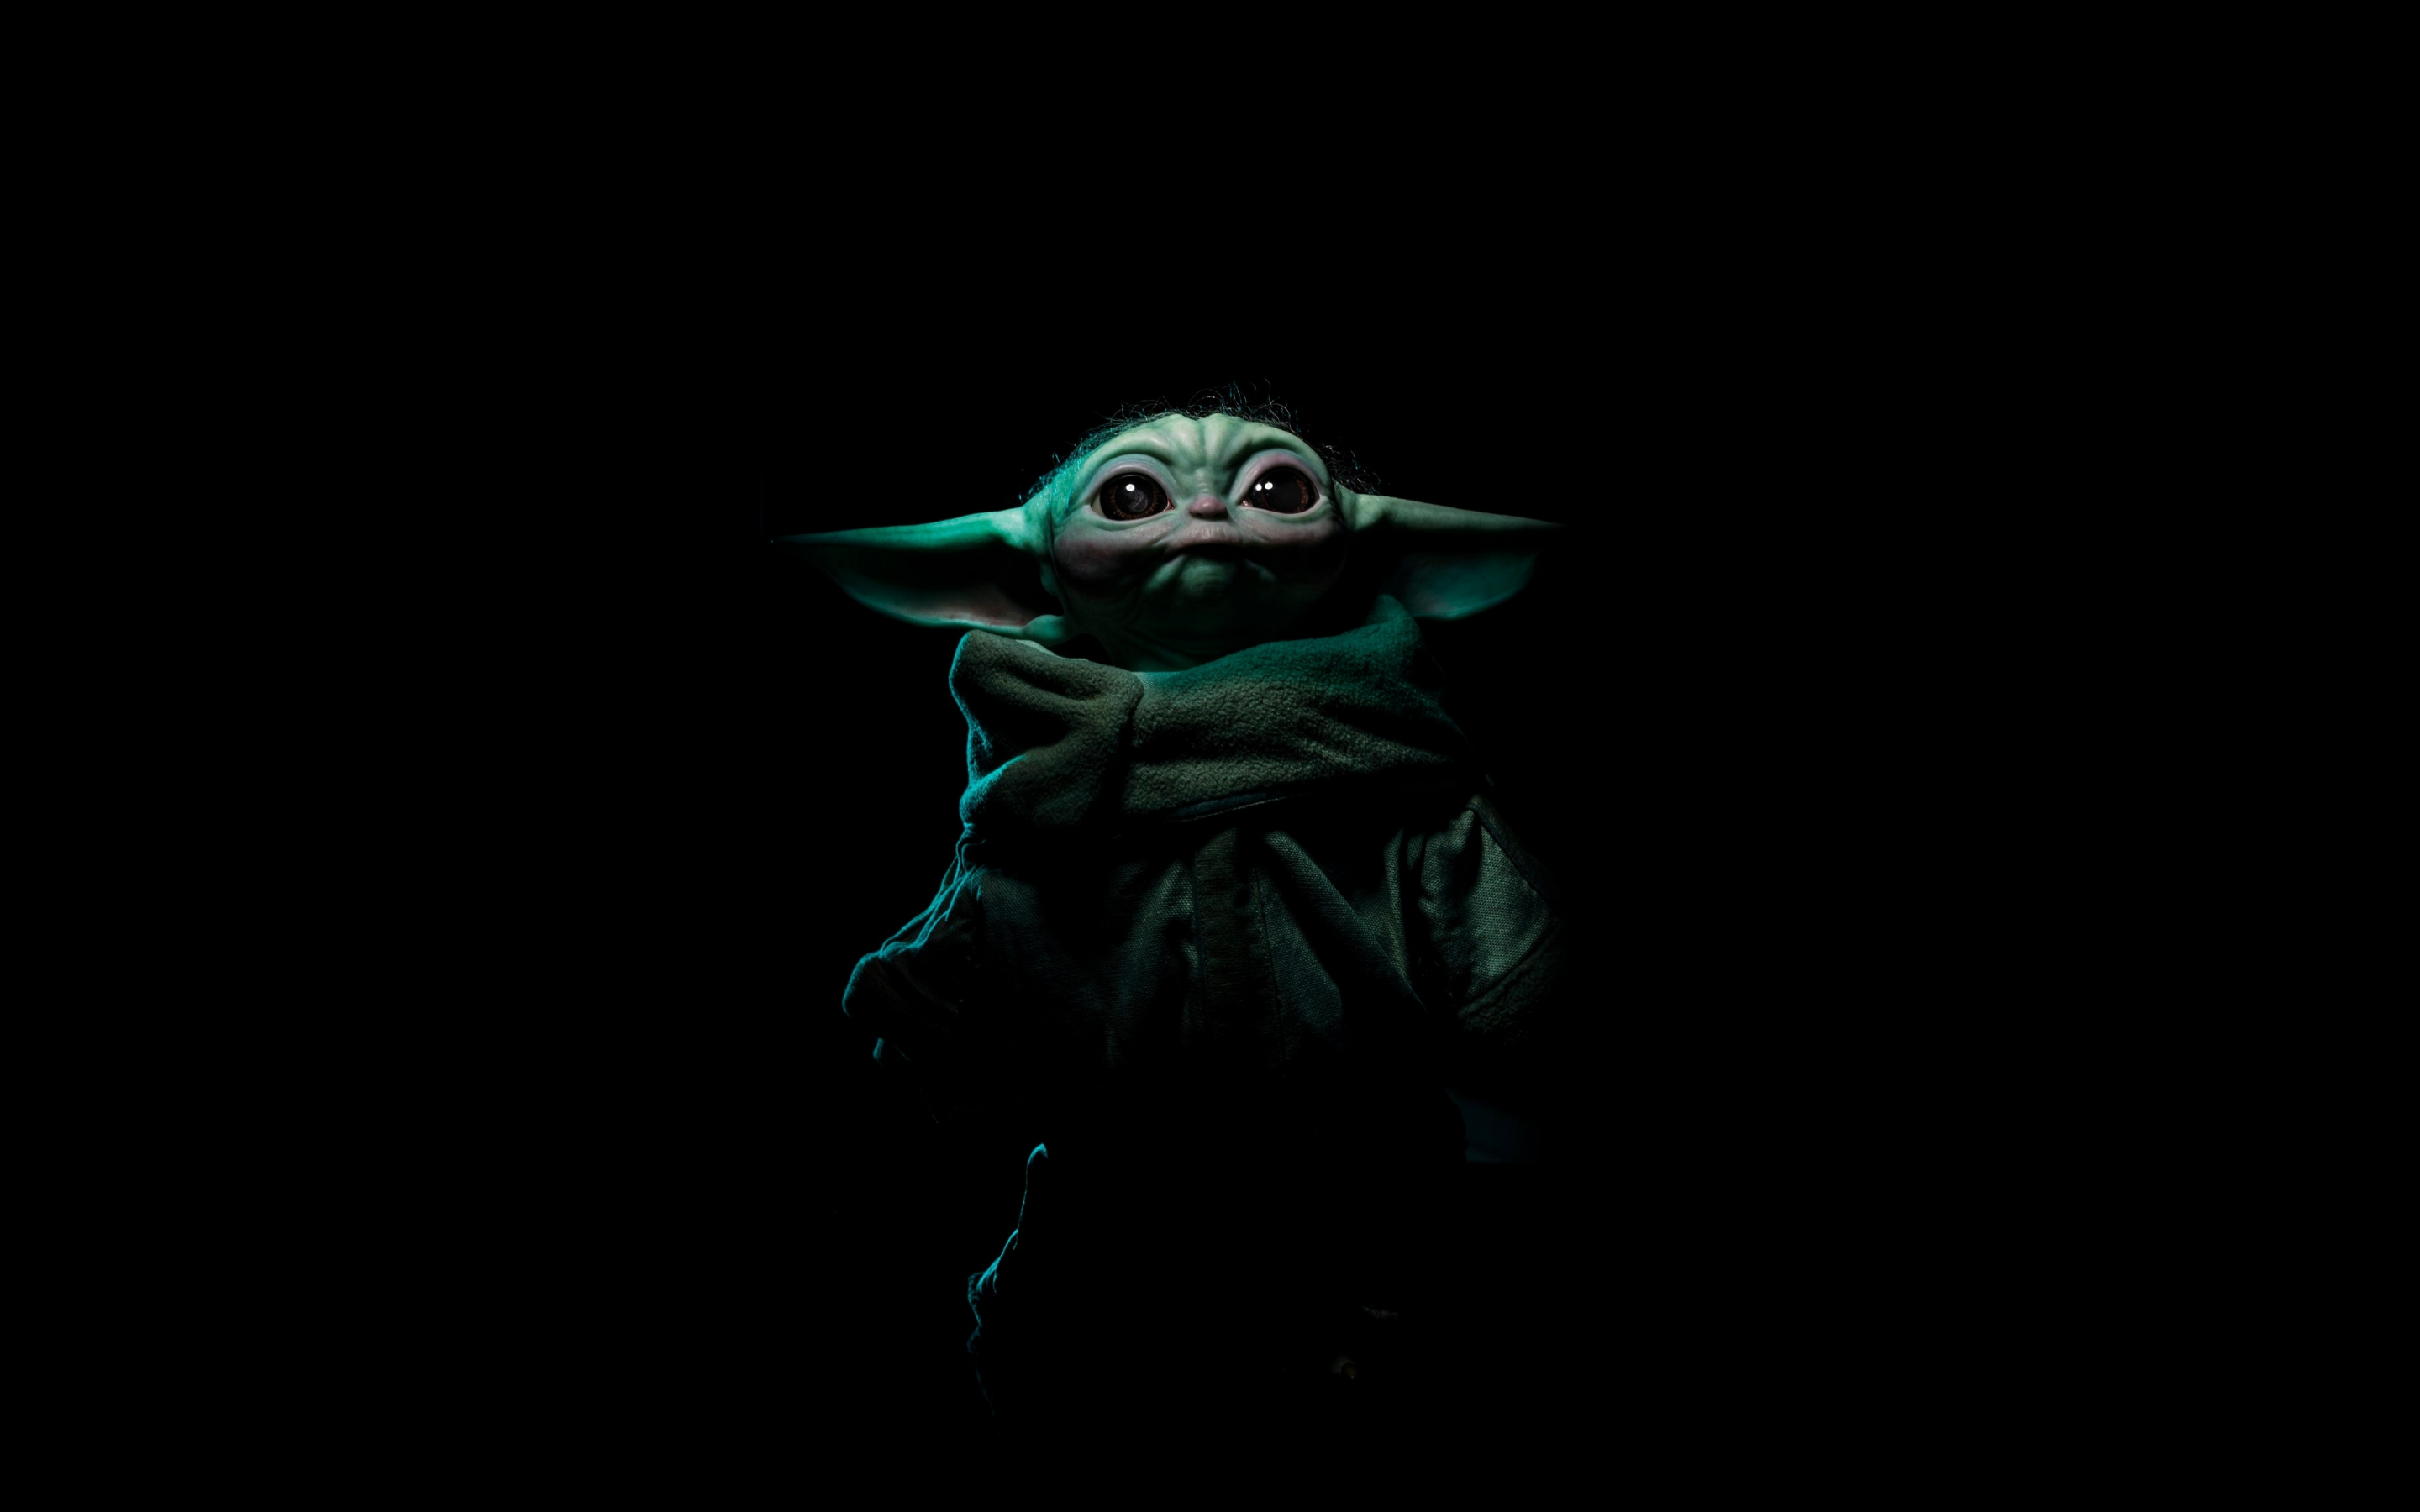 Baby Yoda, star wars, fan art, 2021, 2880x1800 wallpaper